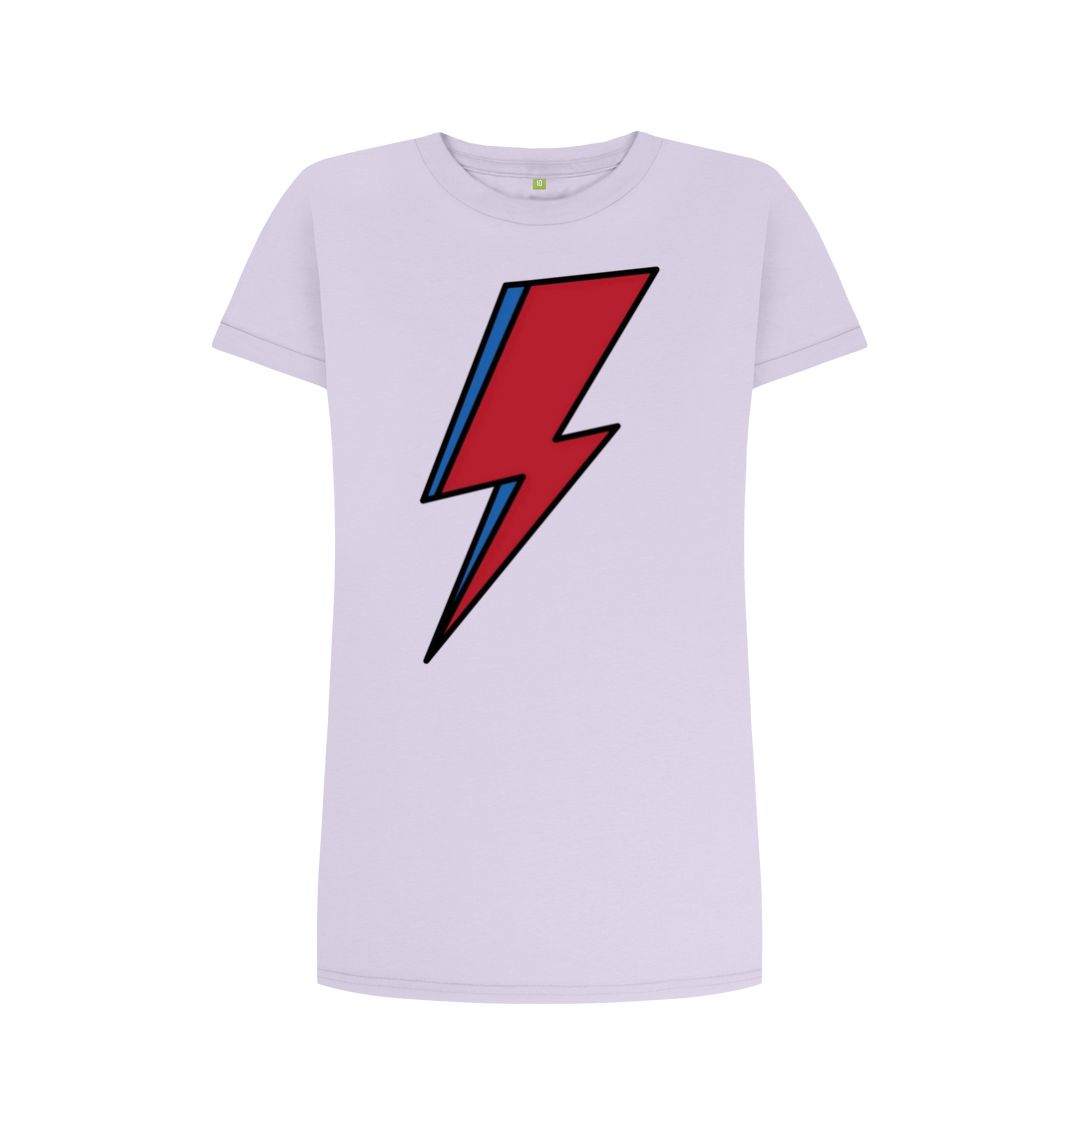 Violet Lightning Bolt Women's T-Shirt Dress